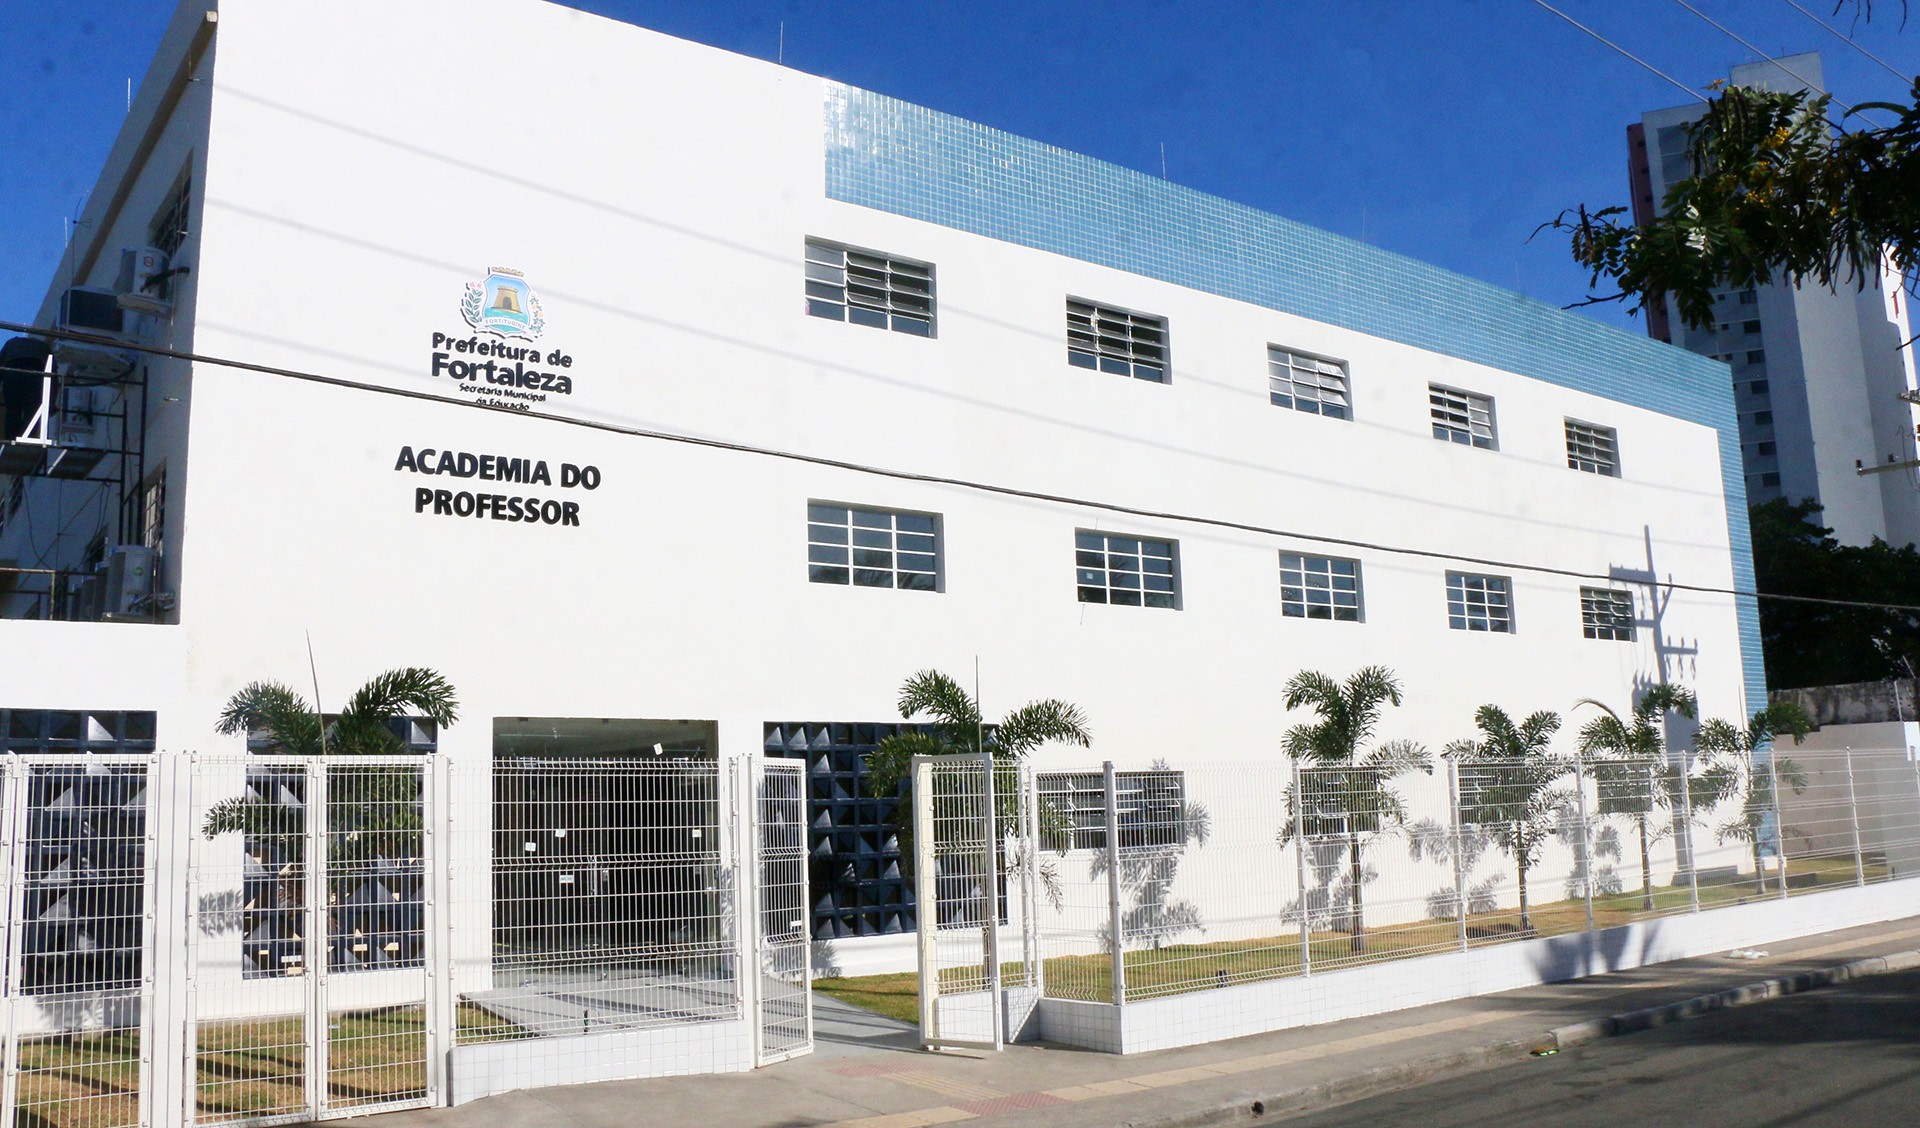 Fóruns Territoriais de Fortaleza - Fórun Territorial Centro, Moura Brasil e Praia de Iracema - Prefeitura de Fortaleza inaugura Academia do Professor